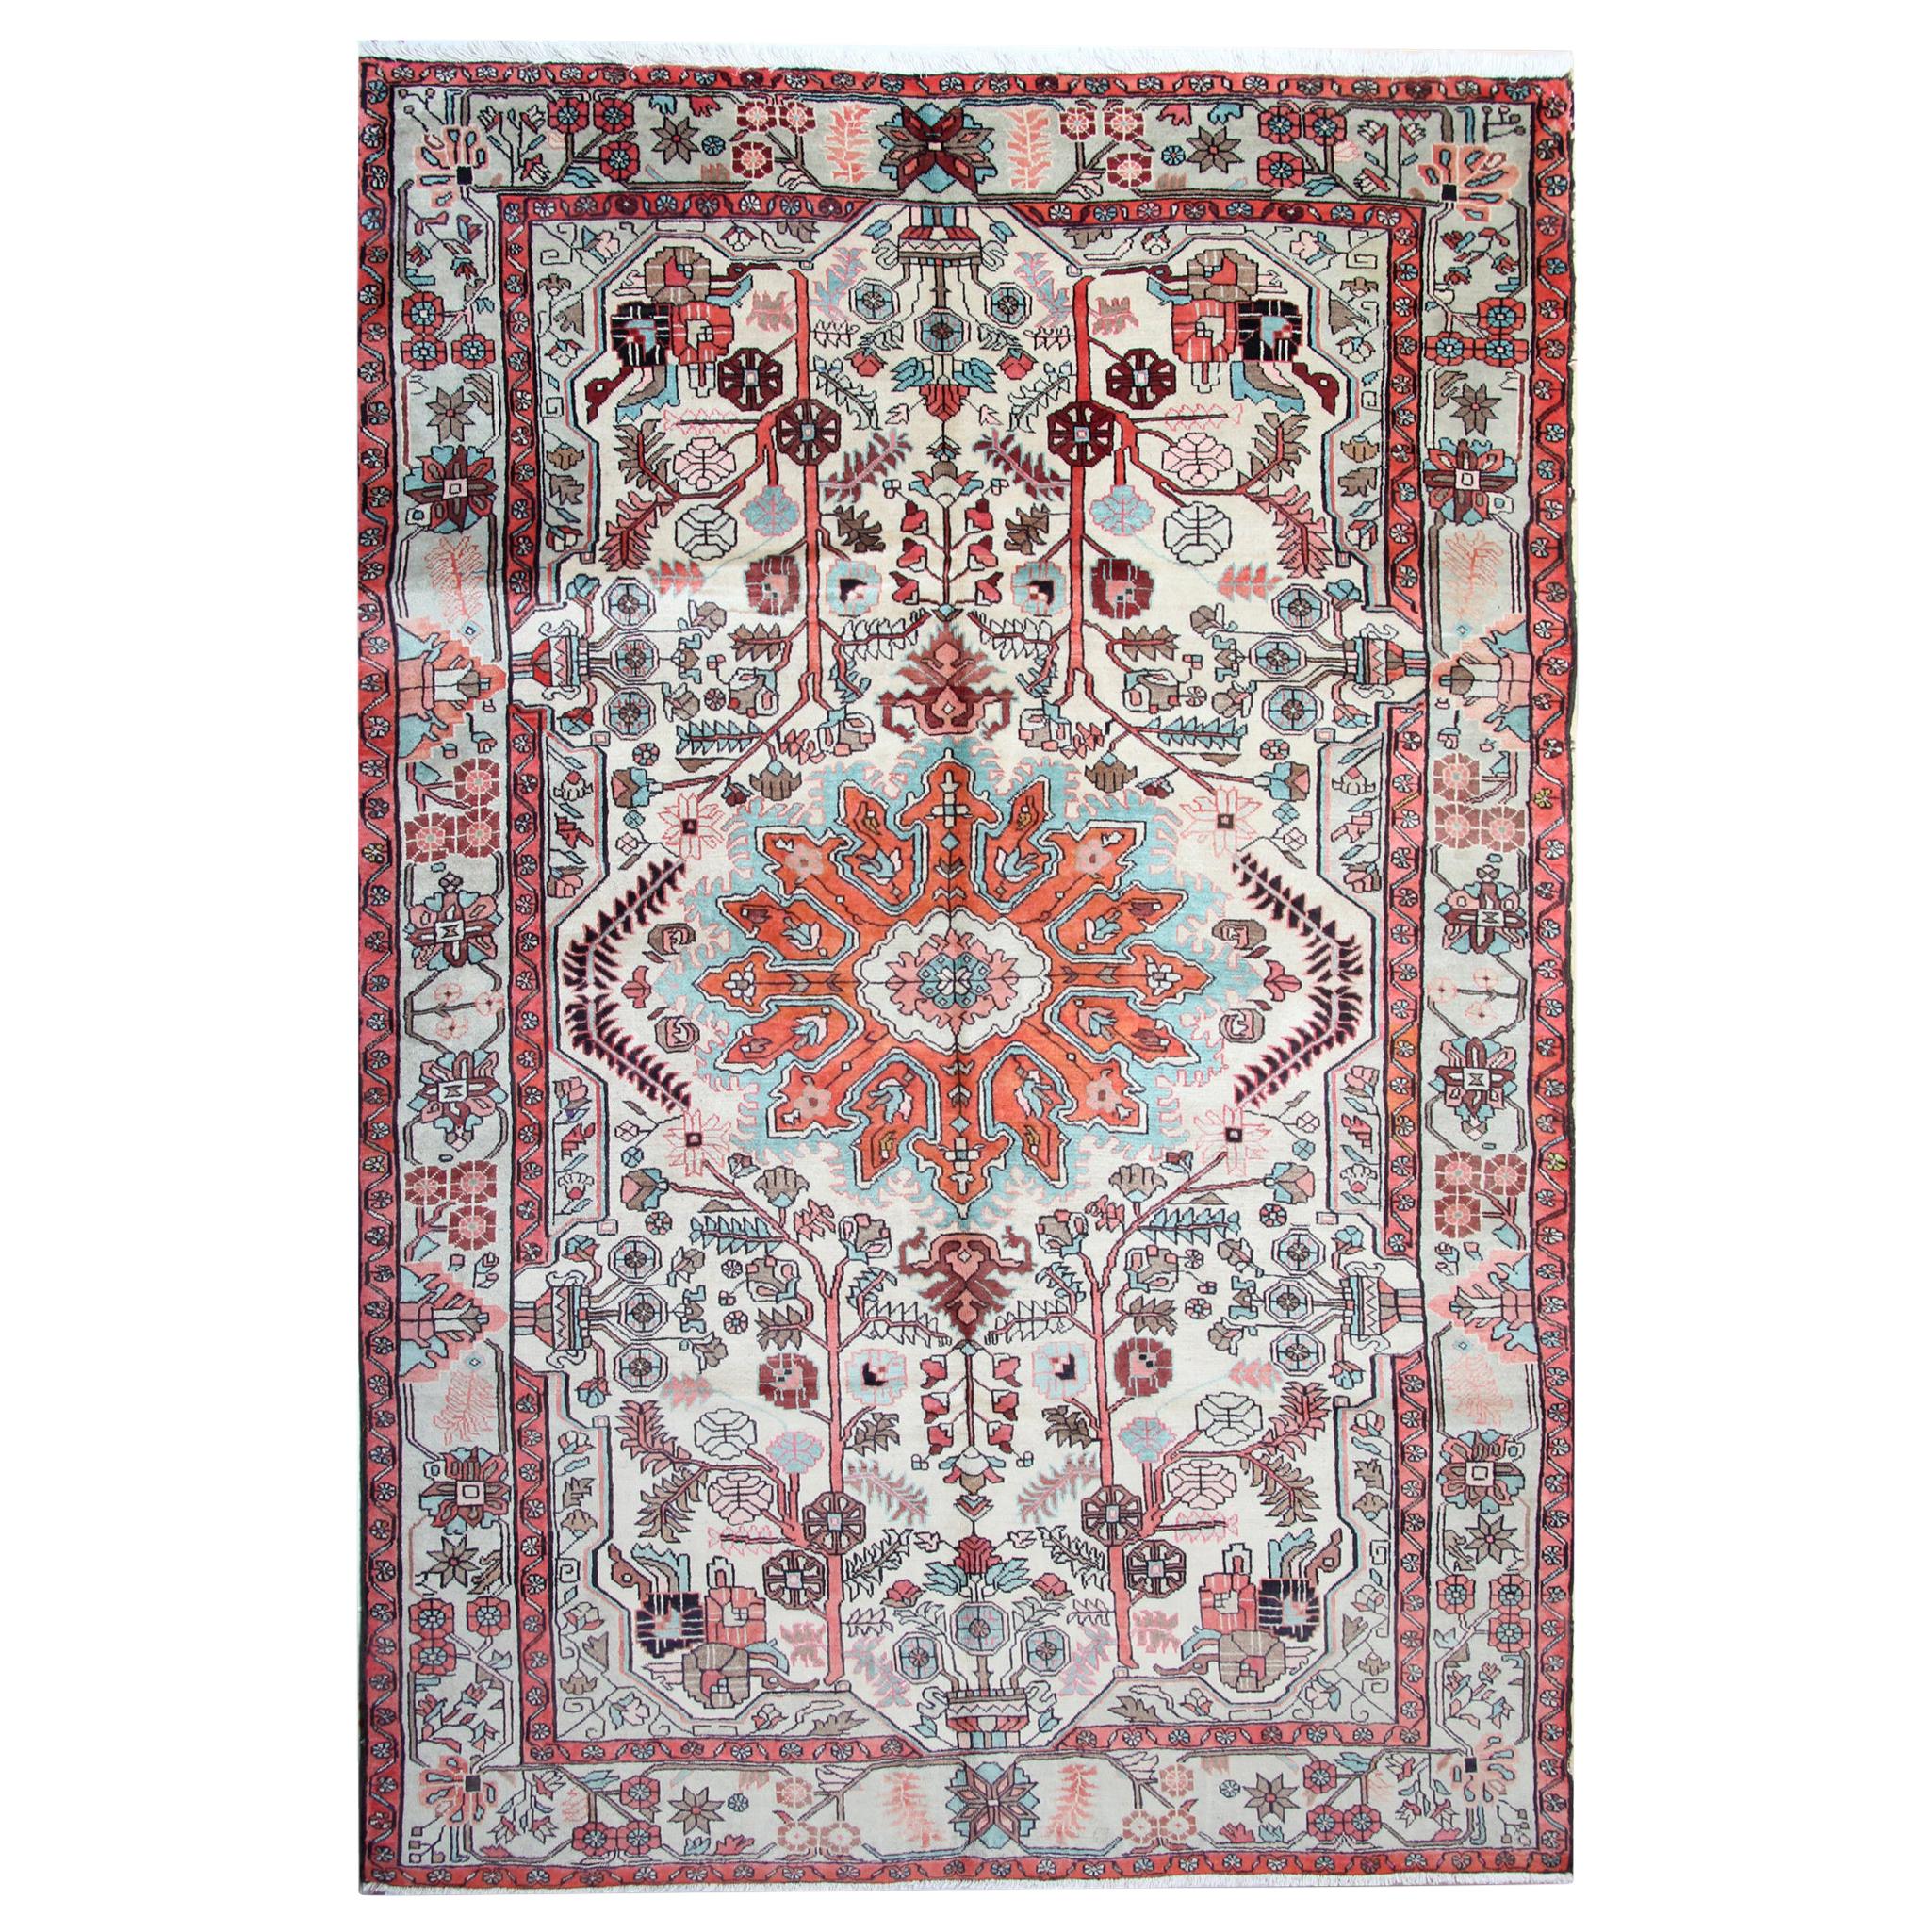 Handgefertigter orientalischer Teppich aus Wolle, traditioneller afghanischer Teppich